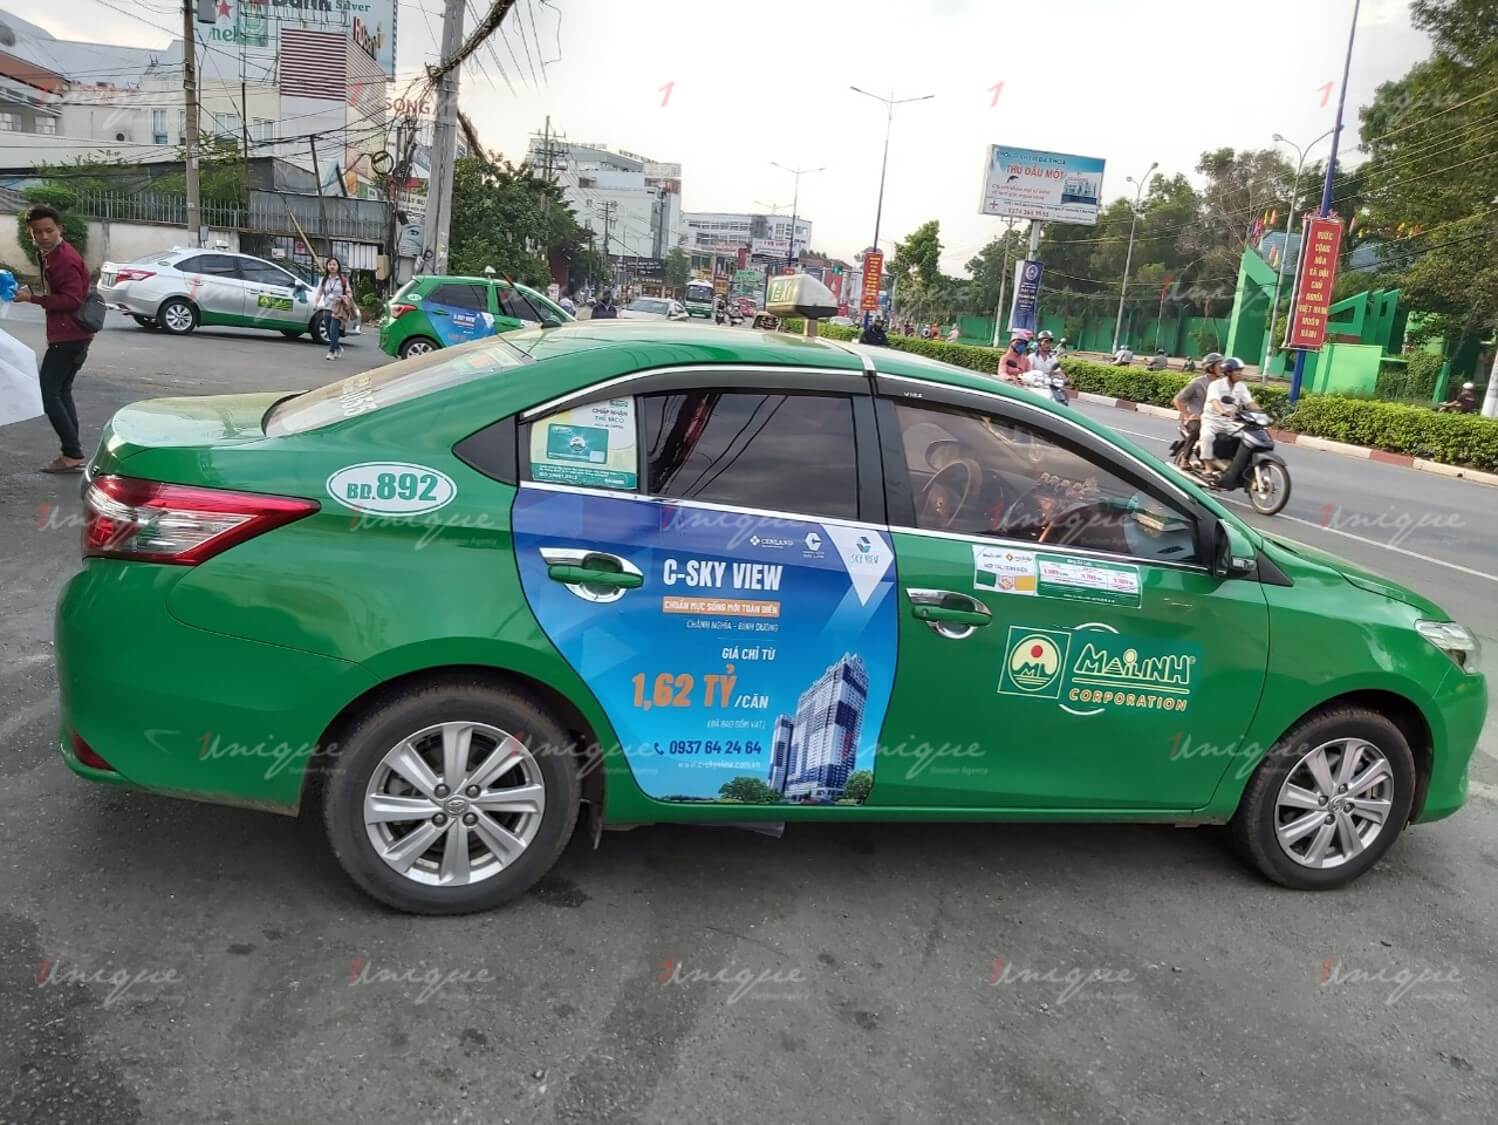 Chiến dịch quảng cáo trên taxi của C-Skyview